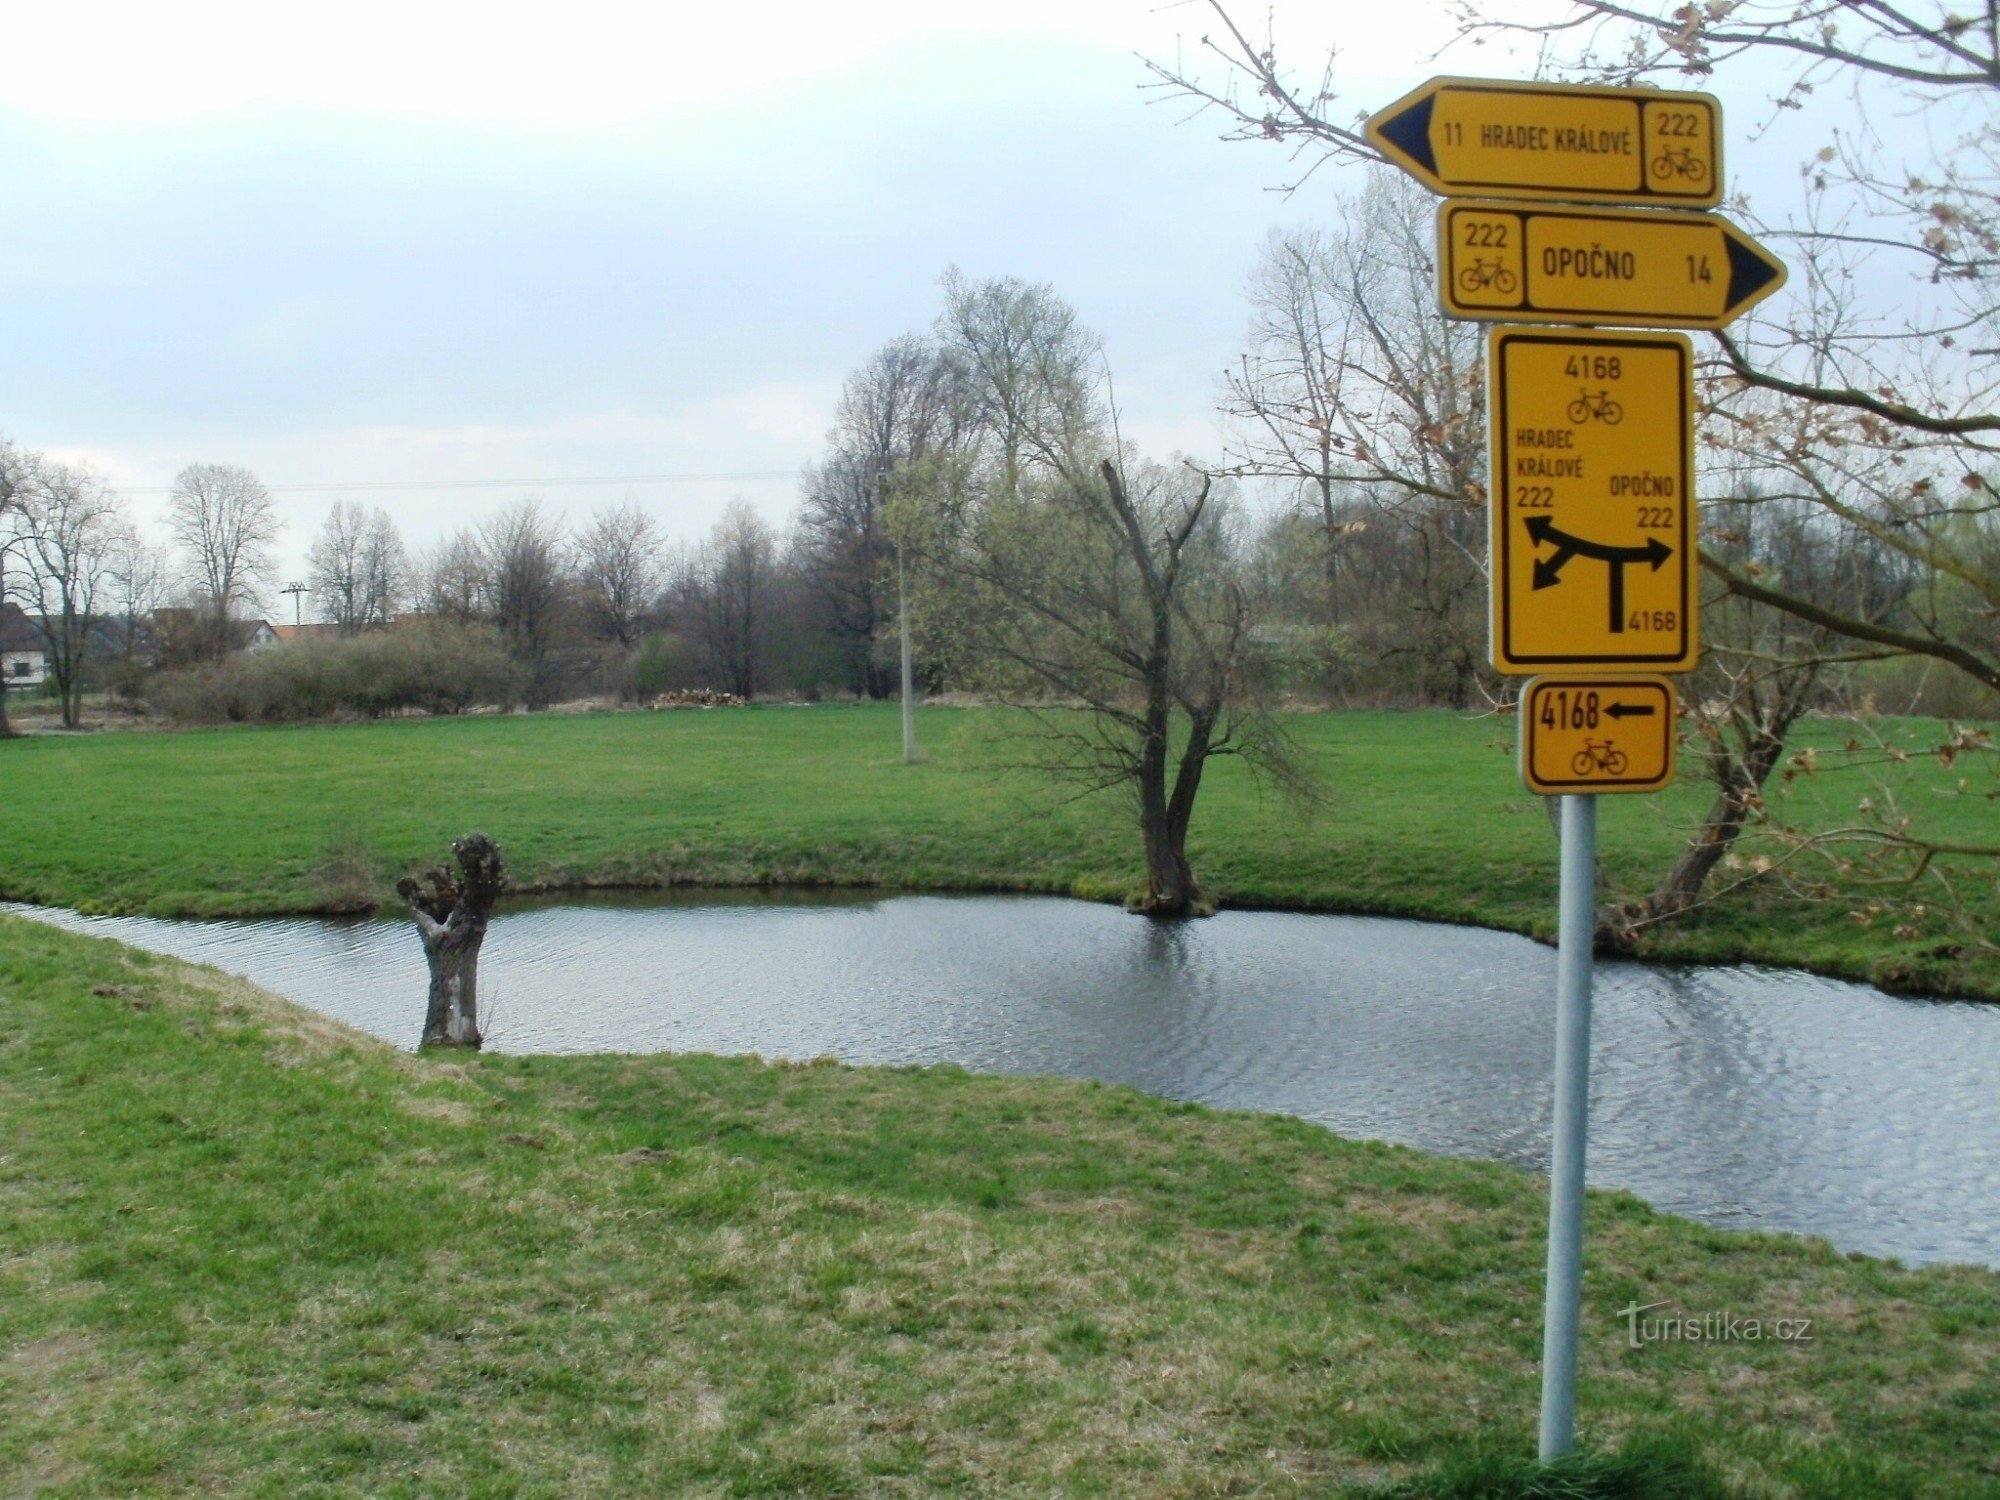 sinalização de cicloturismo Krňovice perto do museu ao ar livre